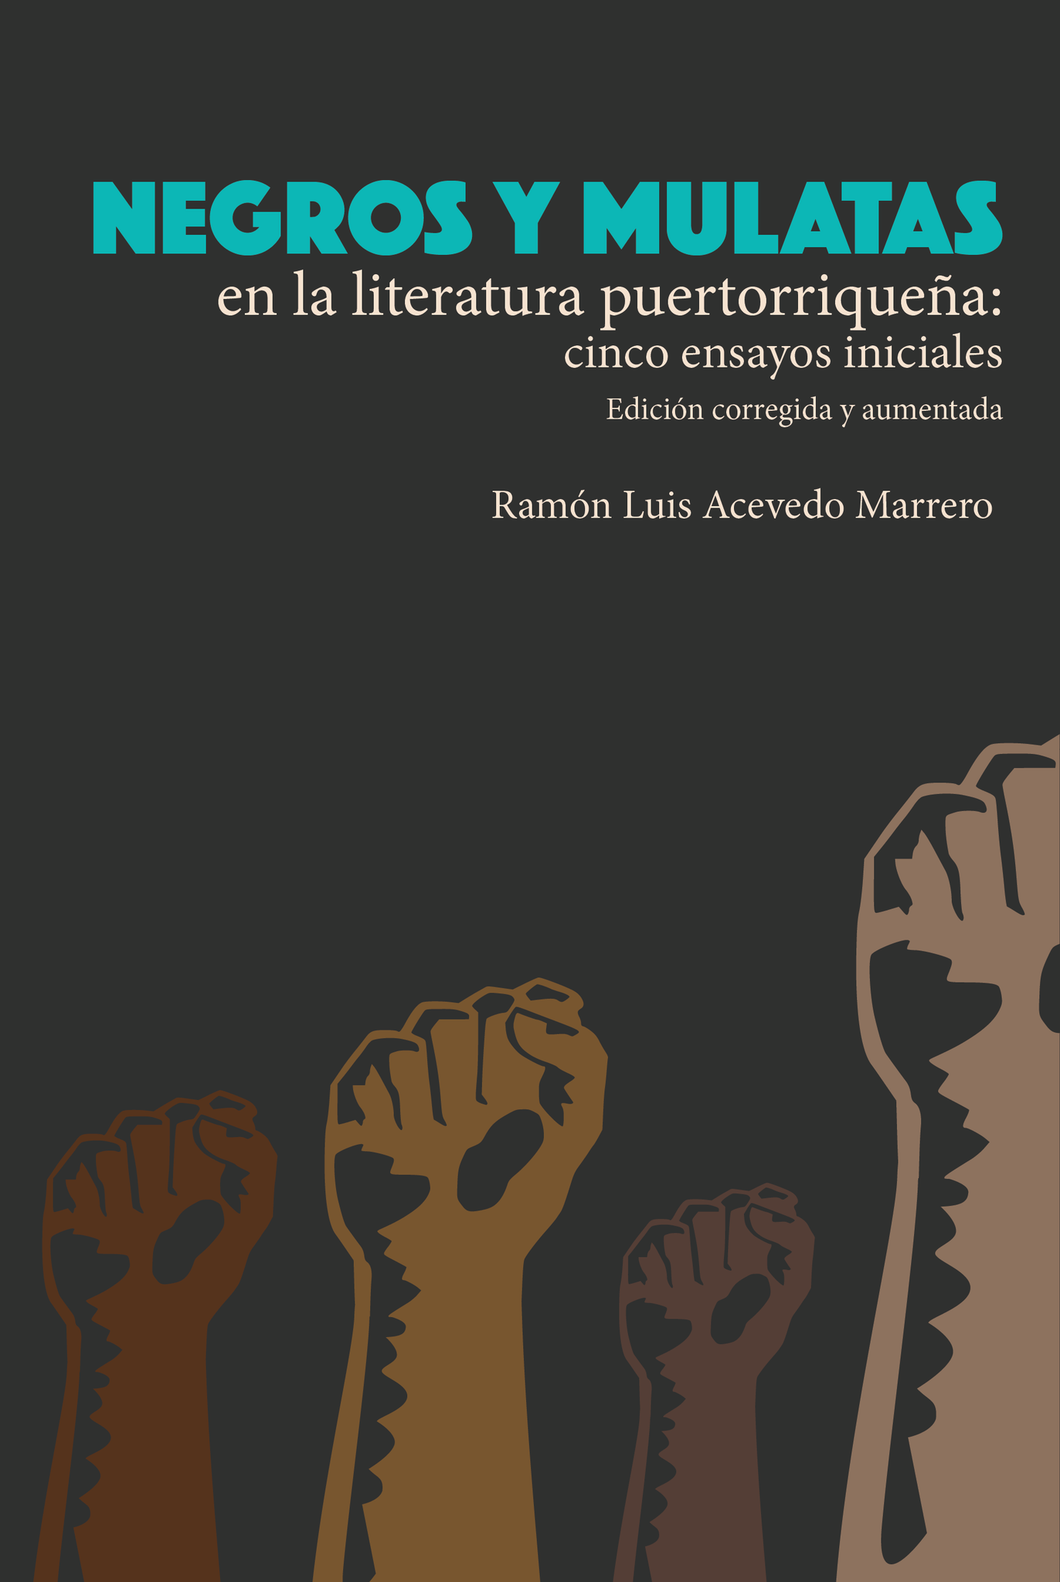 NEGROS Y MULATAS EN LA LITERATURA PUERTORRIQUEÑA: CINCO ENSAYOS INICIALES - Ramón Luis Acevedo Marrero